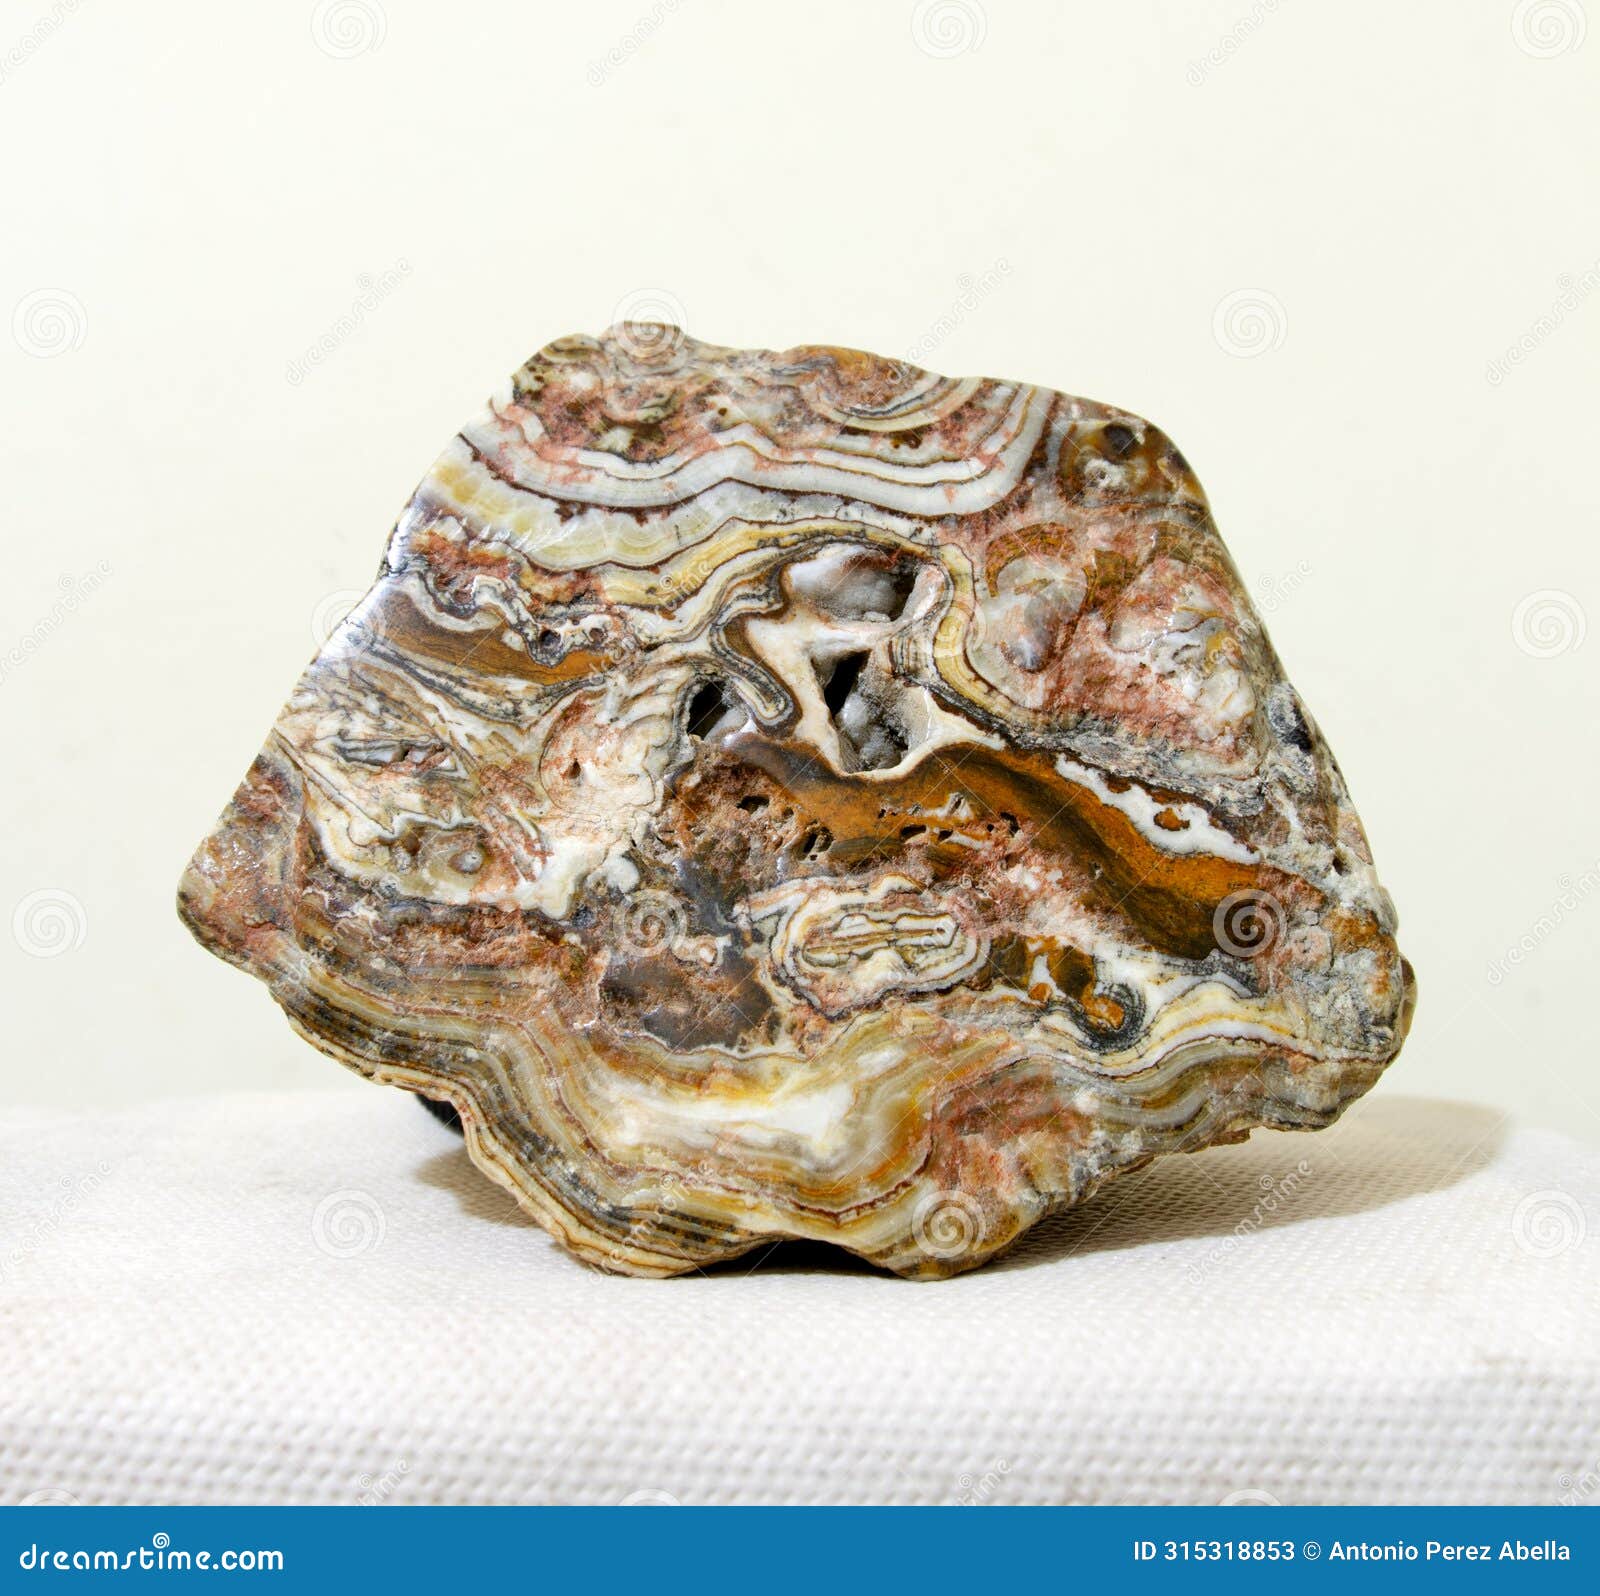 travertino - aragonito - marmol - estromatolitic